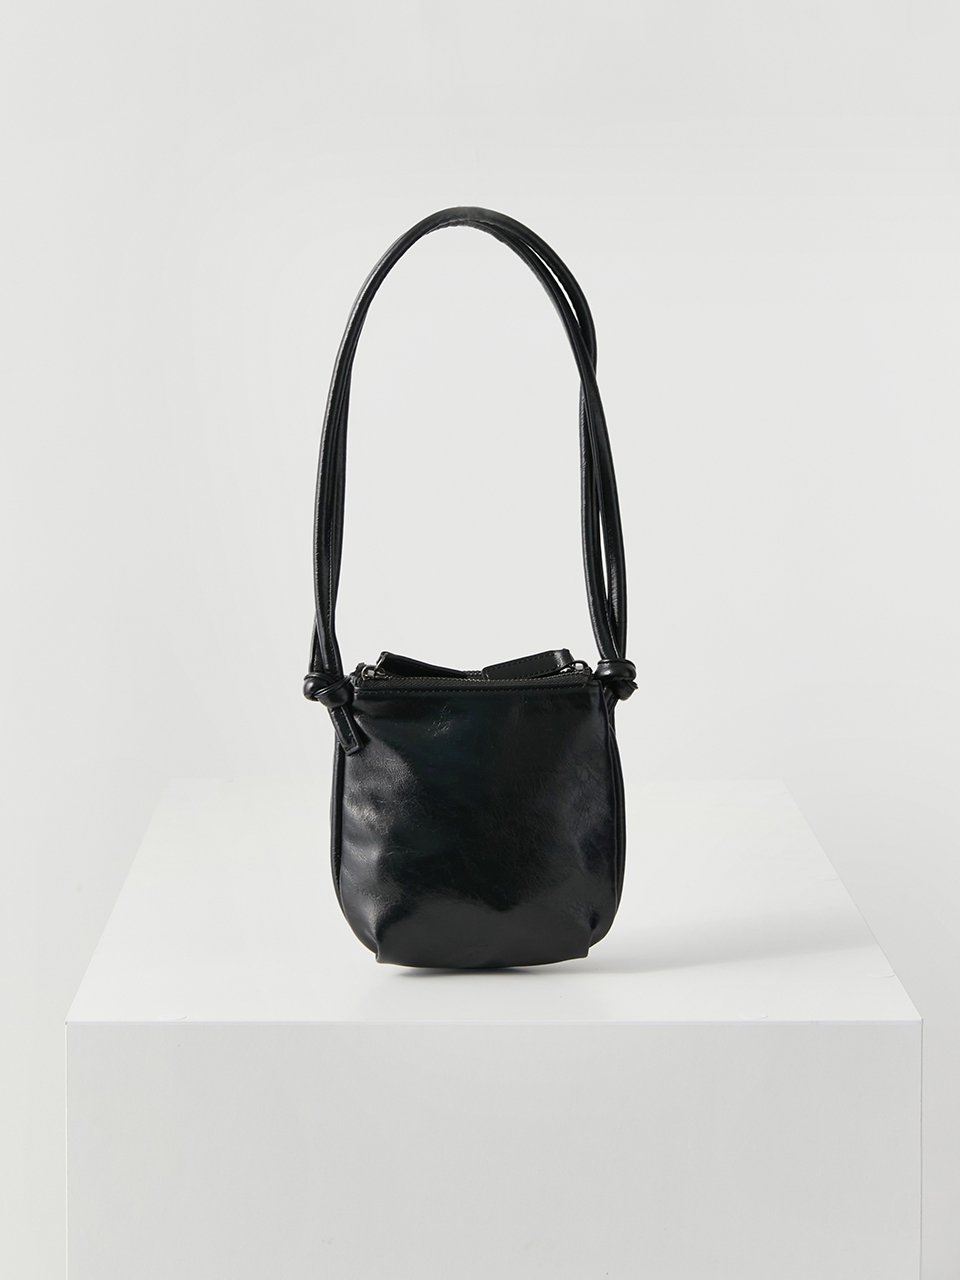 4/11 예약배송 [3차 입고] mini layered bag (crinkle black)